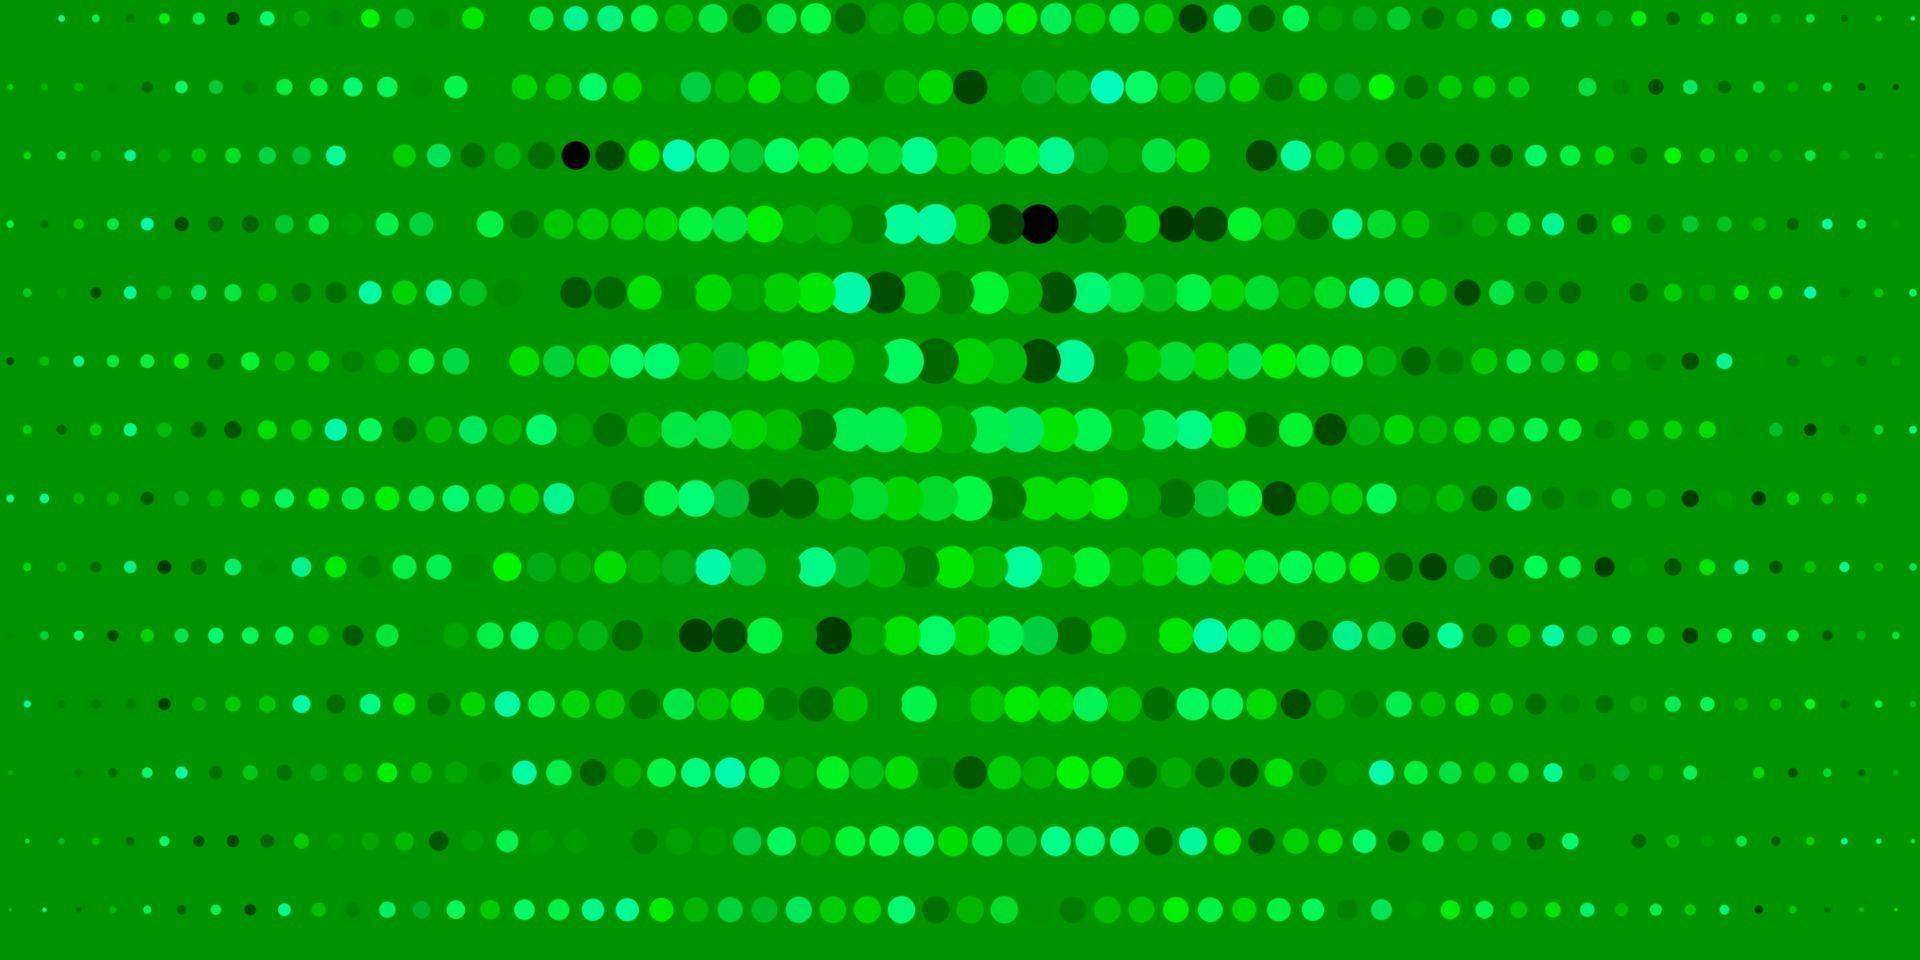 layout de vetor verde escuro com formas de círculo.